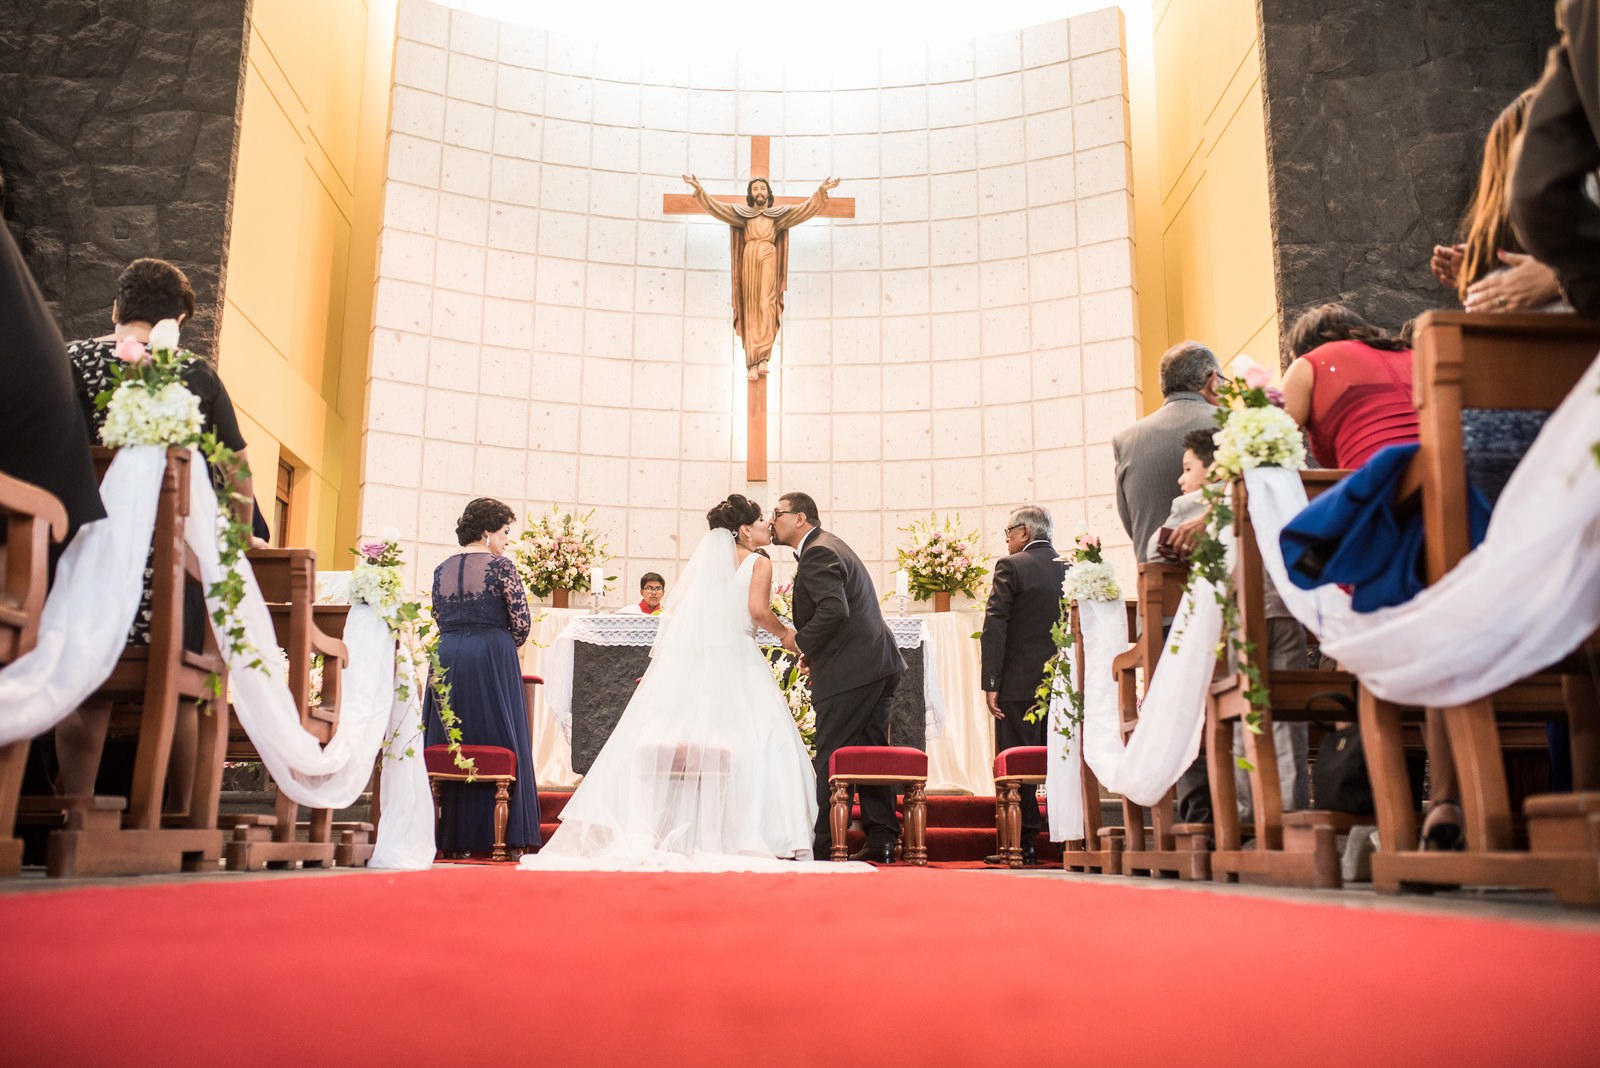 Fiorella Lucho aldo aguilar fotografo fotografia boda sesion novios retrato novia novio arequipa peru 54 vestido terno iglesia salle